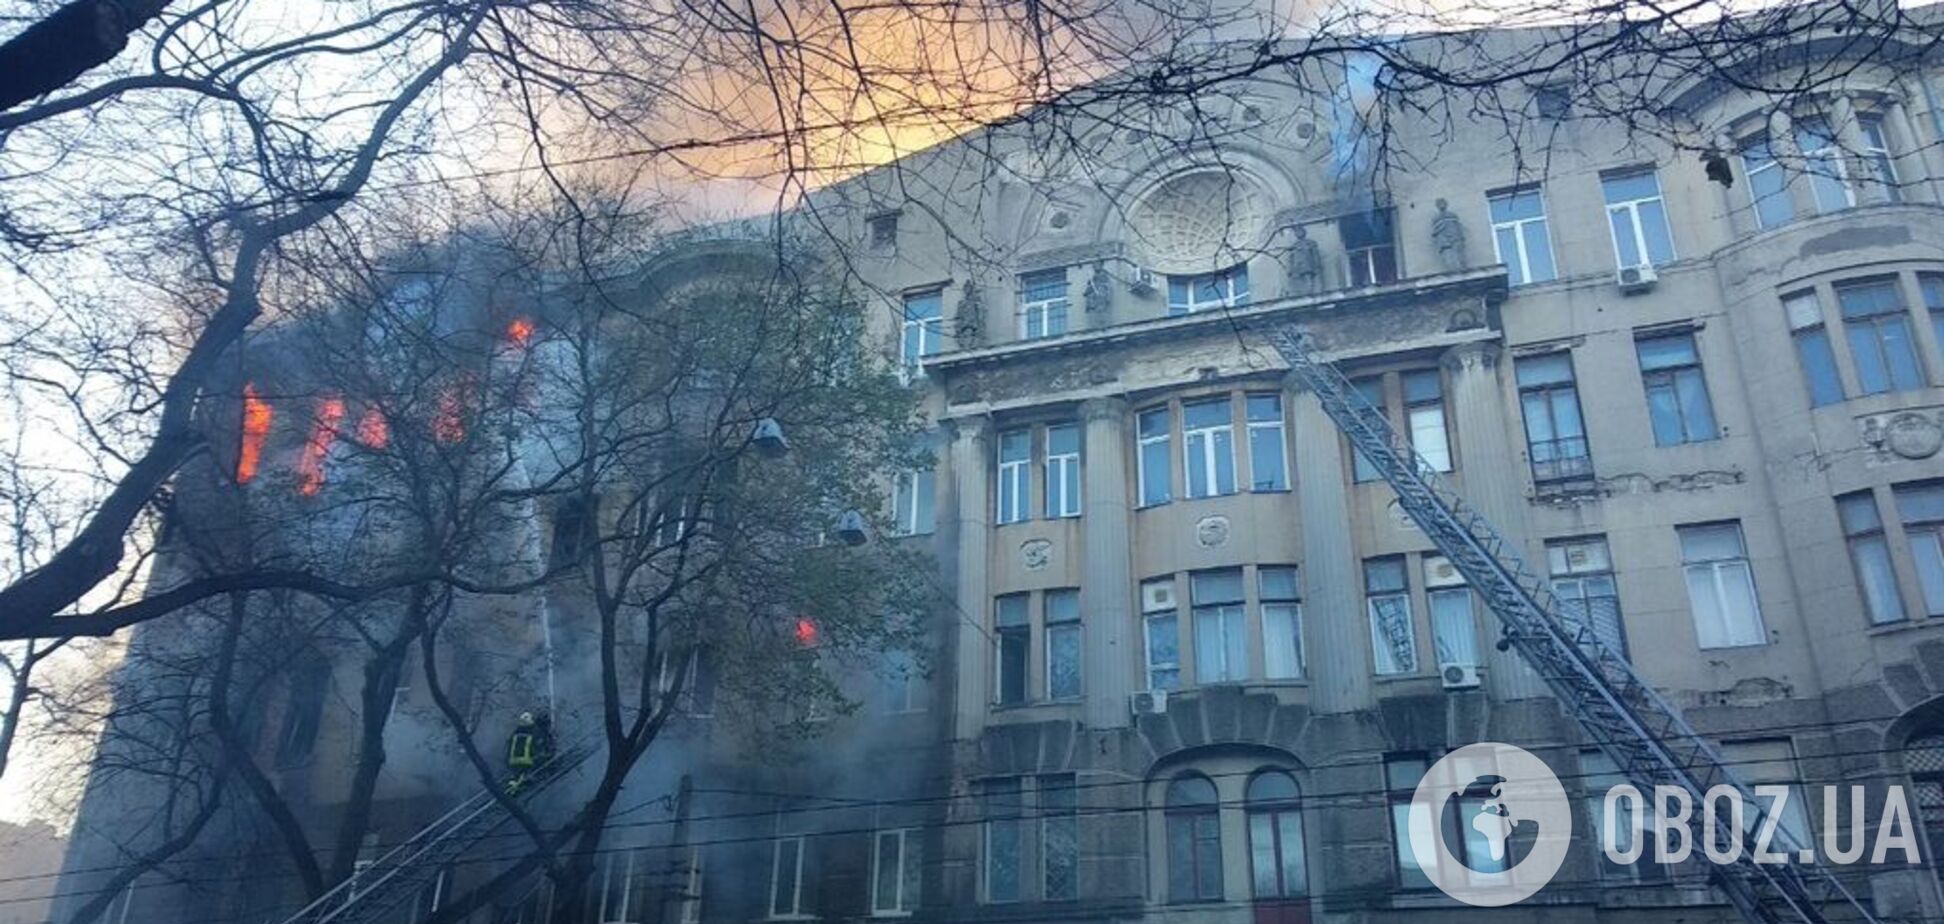 Оприлюднено список потерпілих у пожежі в Одесі: стало відомо про першу жертву